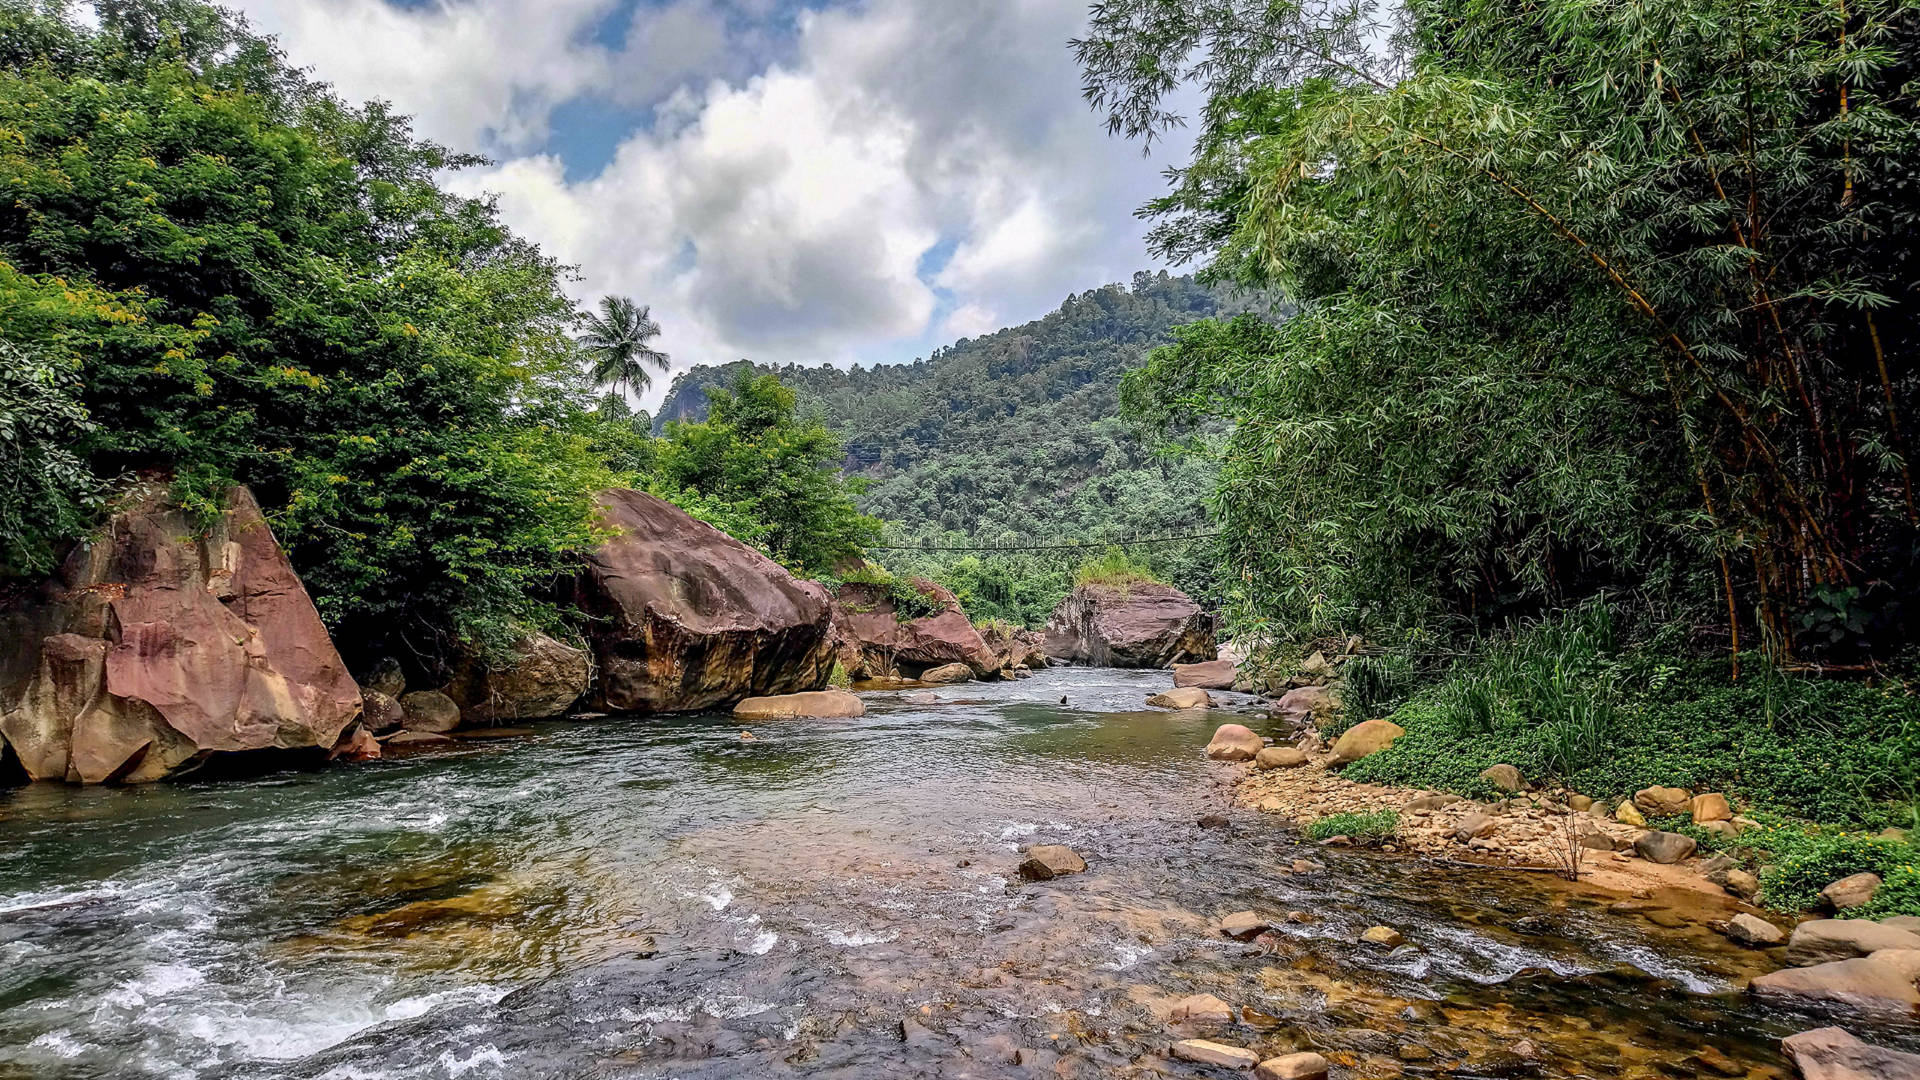 Sri Lanka We-oya River Background